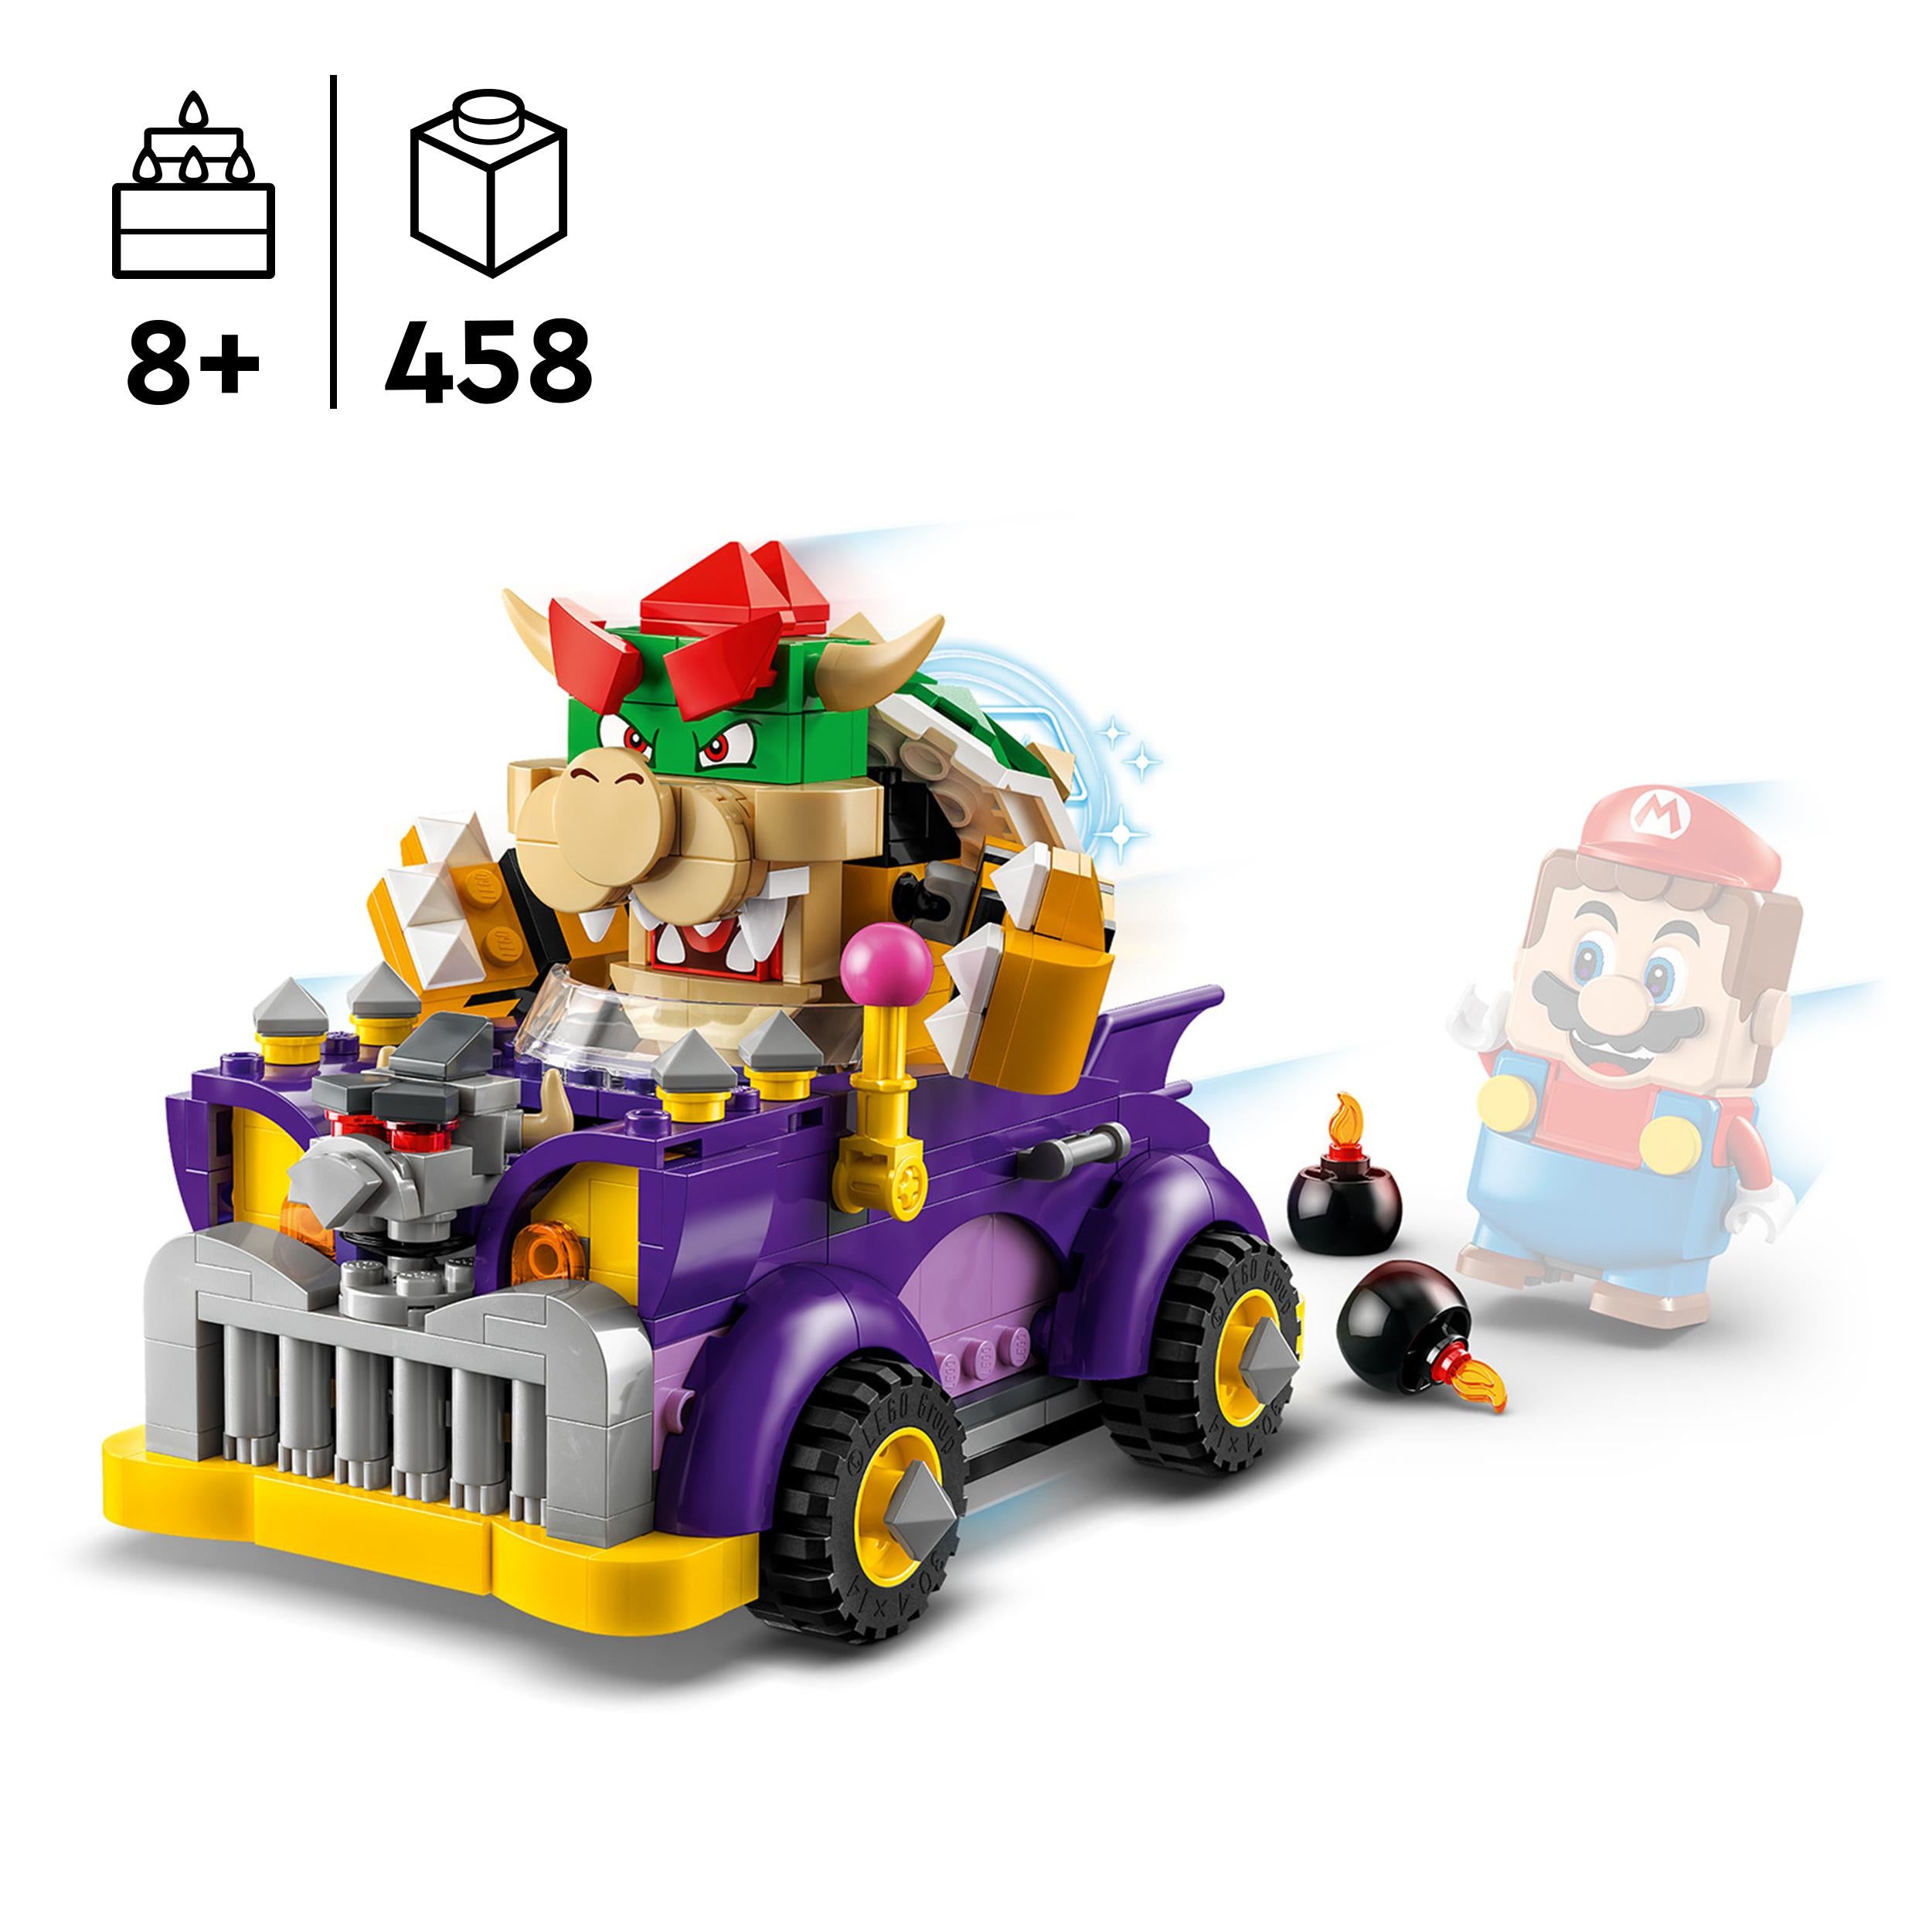 71431 LEGO Super Mario Pack di espansione Il bolide di Bowser